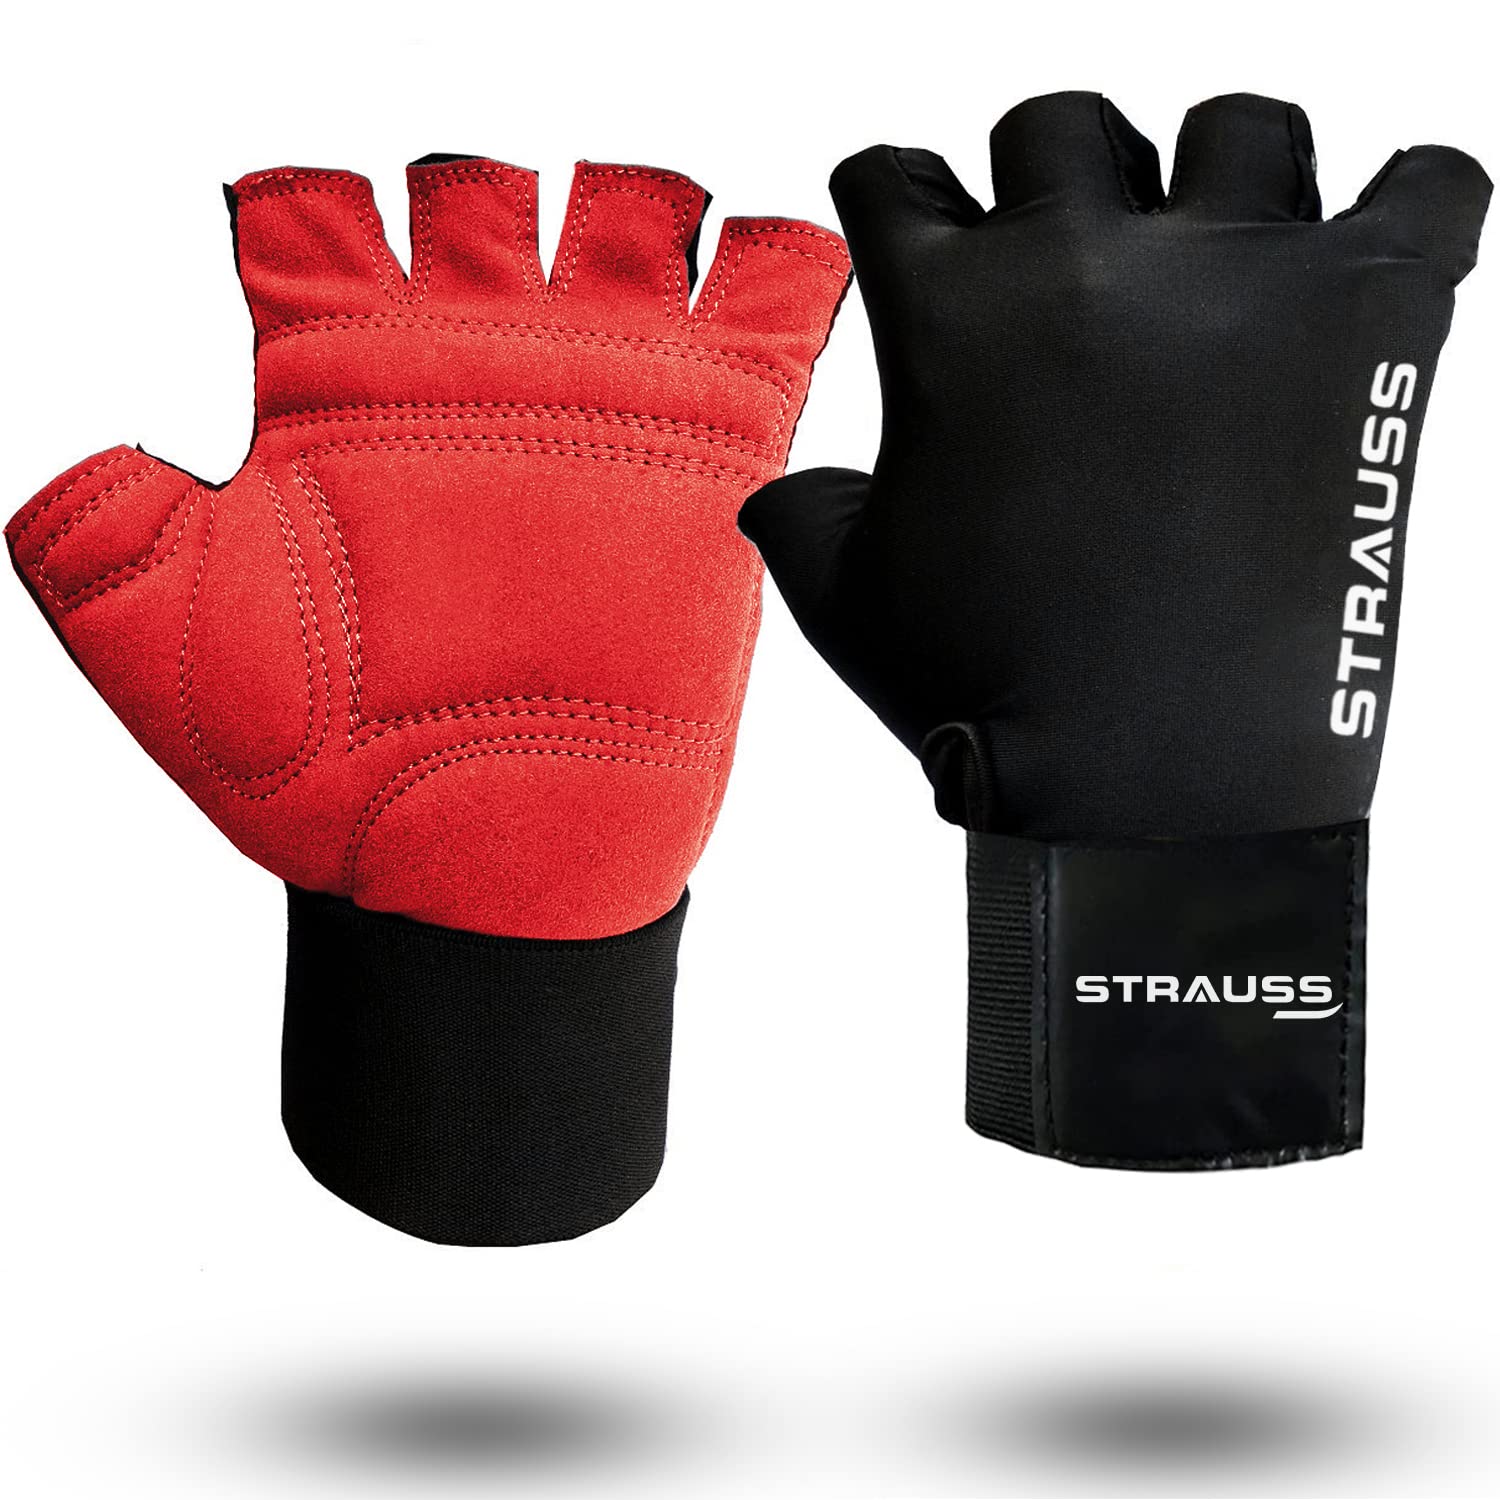 STRAUSS Suede Gloves,Red/Black,Medium